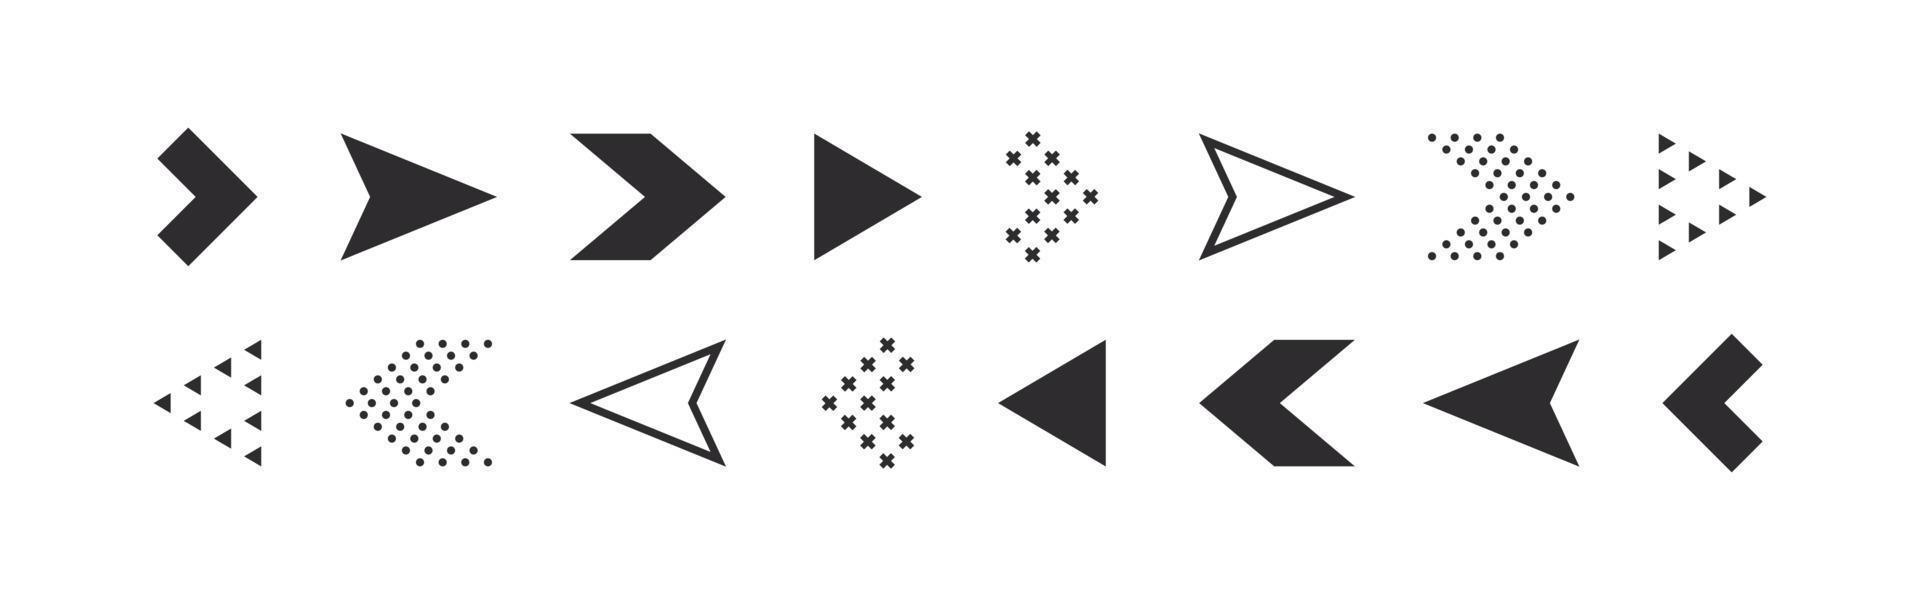 flechas colocar. moderno flecha iconos cursor o flecha señales. vector ilustración